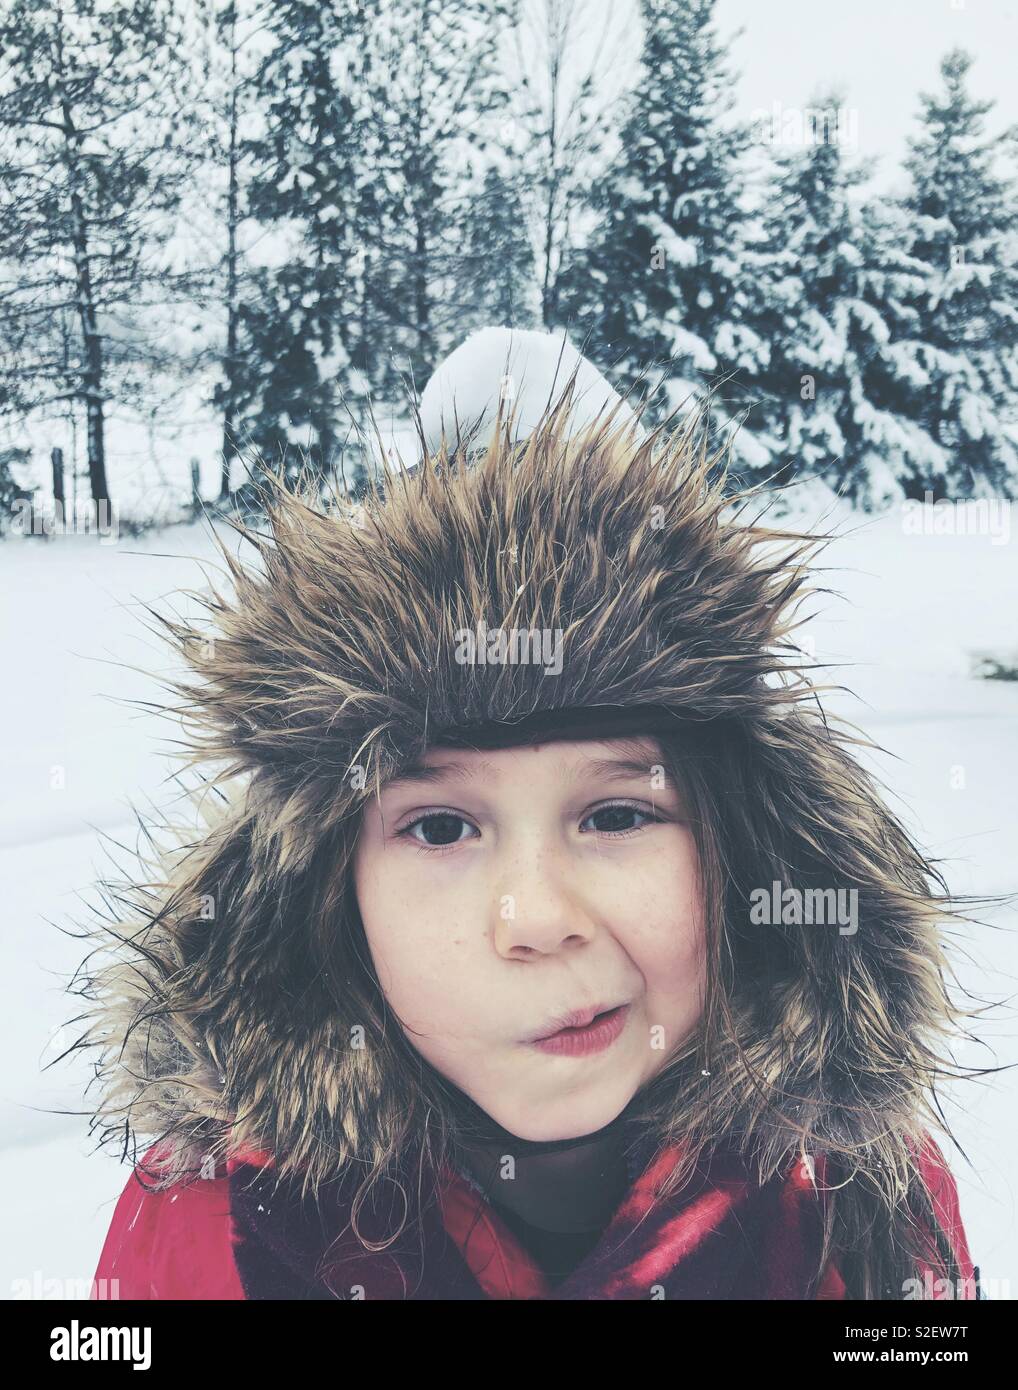 6 year old girl wearing hat trappeur fourrure à l'extérieur dans la neige avec de neige dans la tête et expression drole Banque D'Images